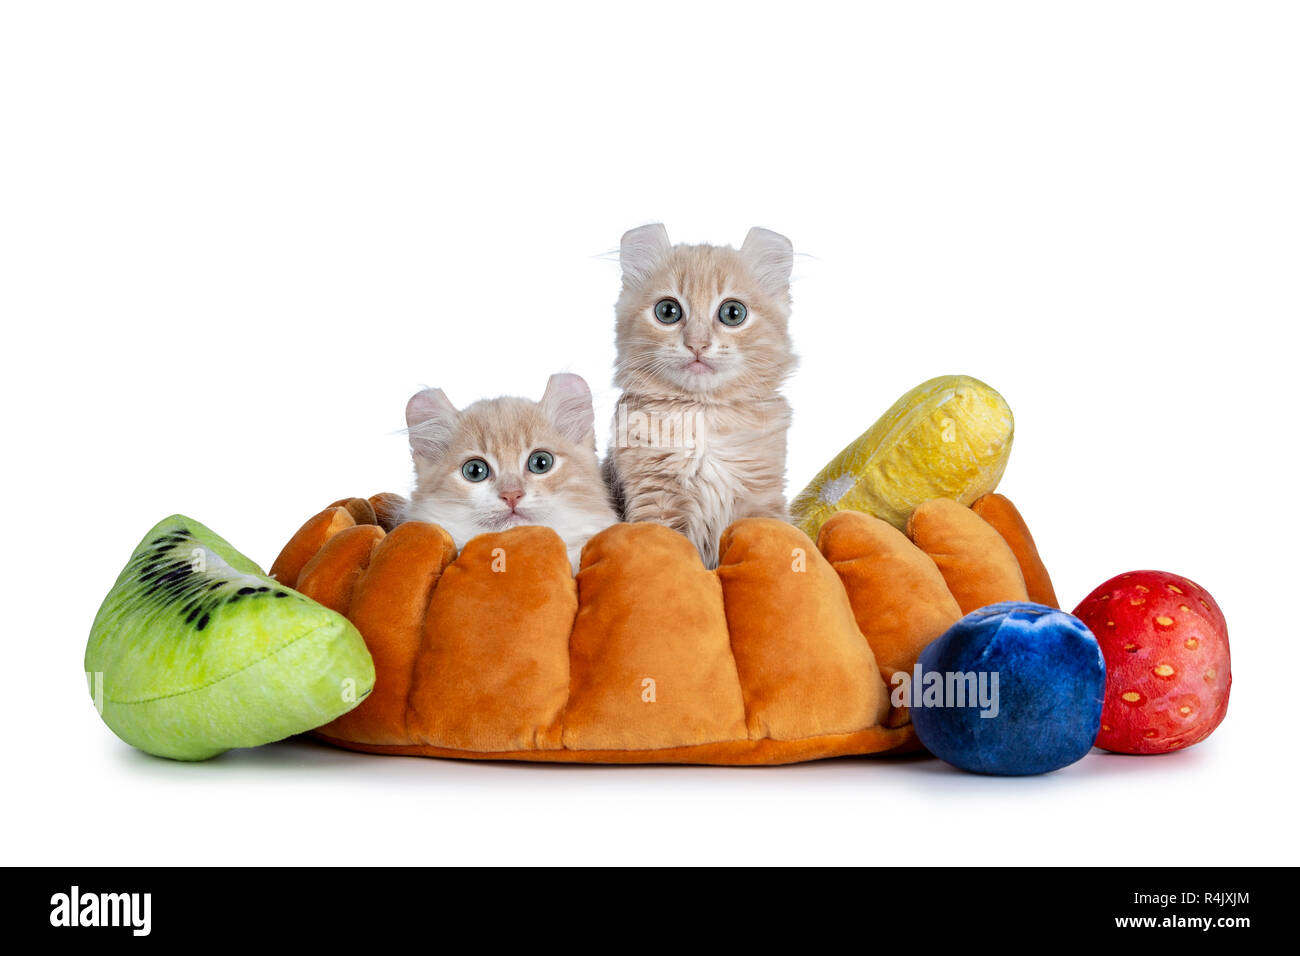 Due crema con bianco American Curl gatto gattini seduti in finto base di pastafrolla per torta con pezzi di frutta. Guardando la telecamera con il Grigio / Blue Eyes. Isolato su wh Foto Stock